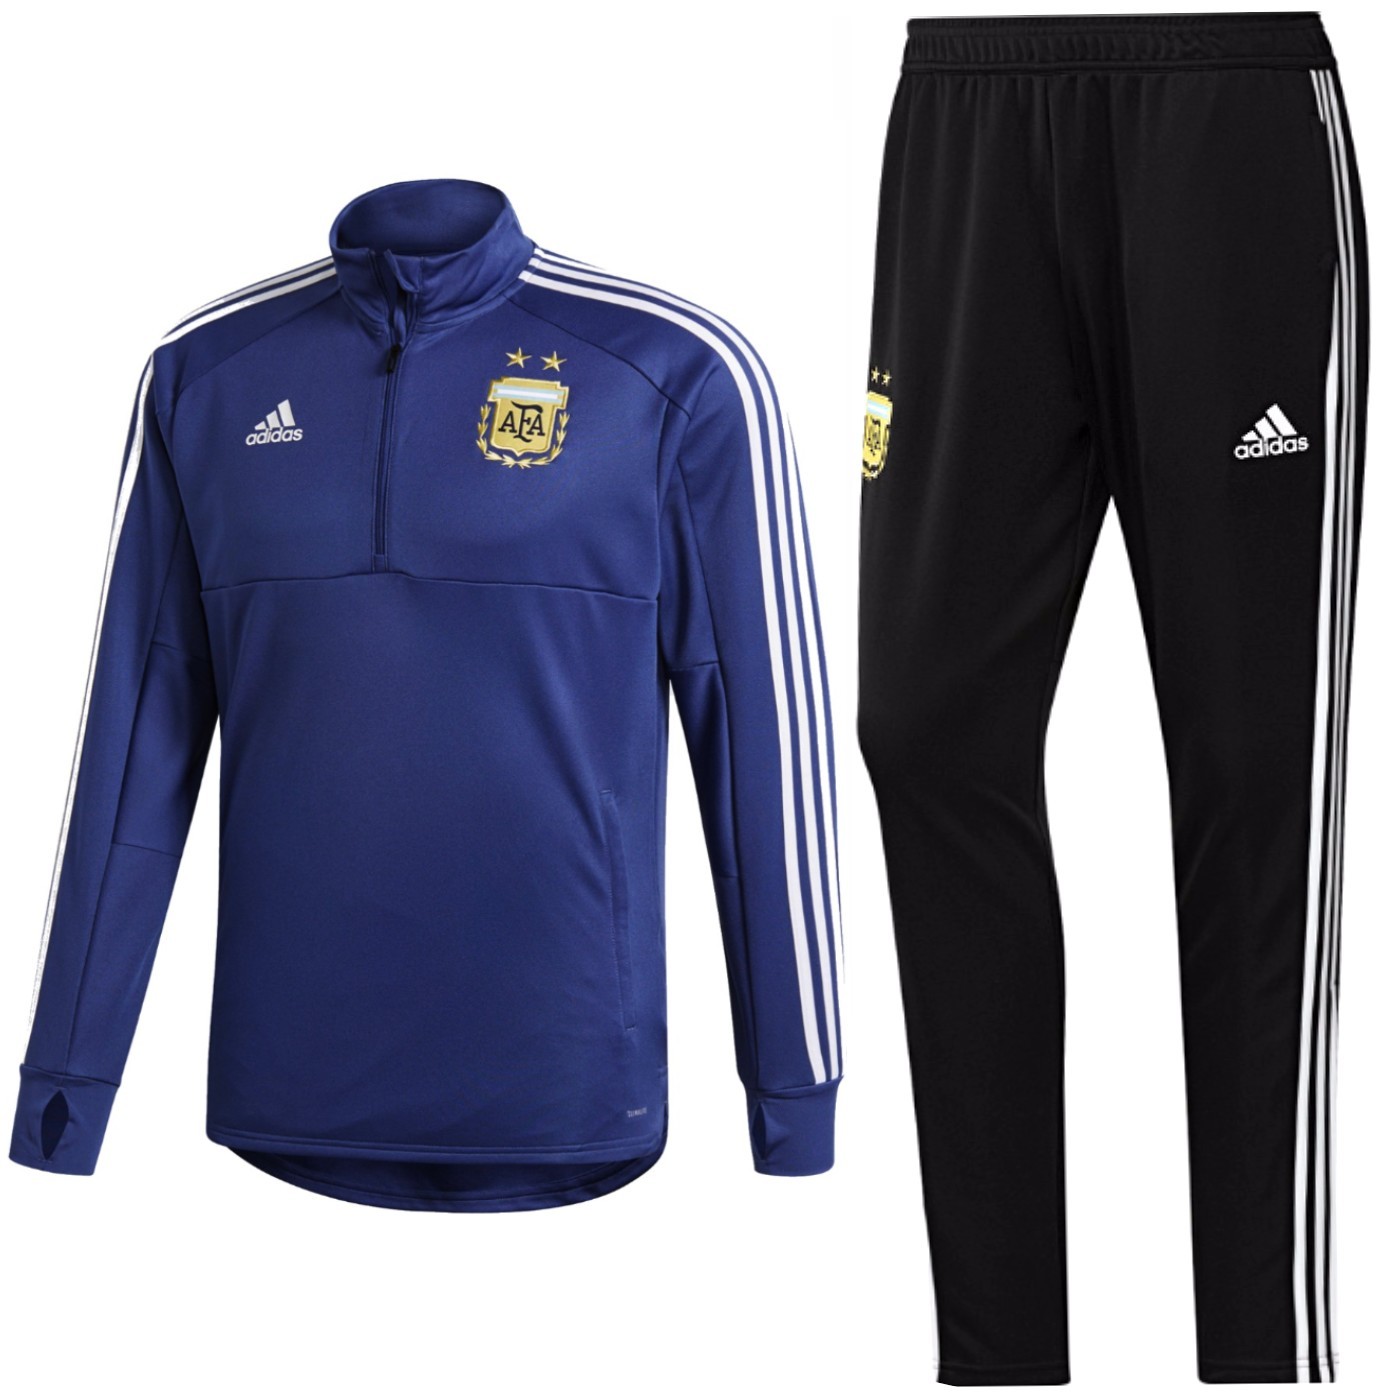 Chándal de seleccion Argentina 2018/19 Adidas